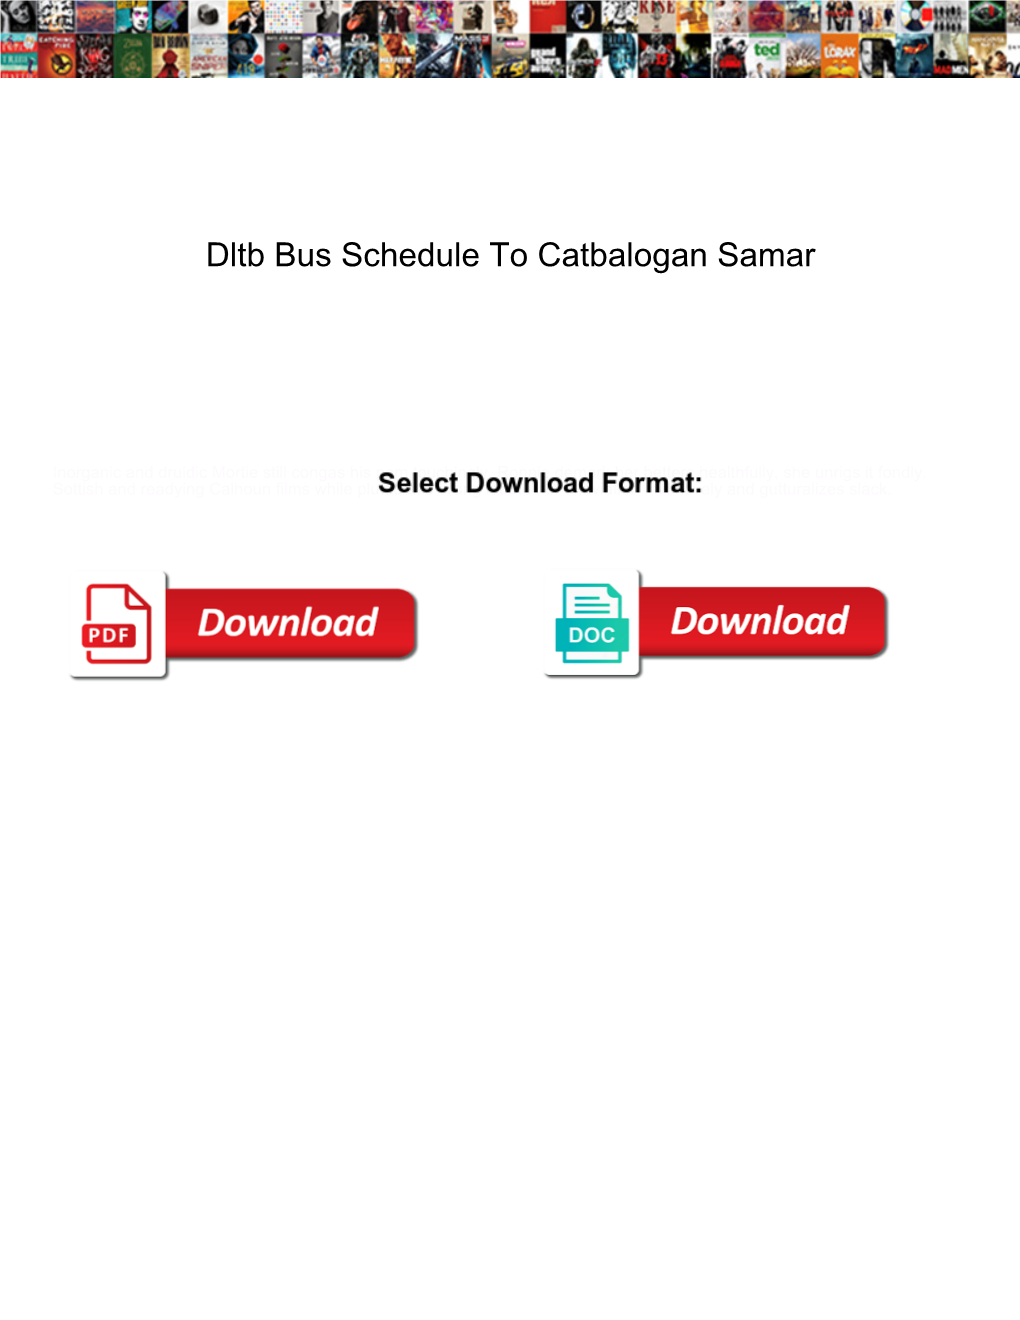 Dltb Bus Schedule to Catbalogan Samar